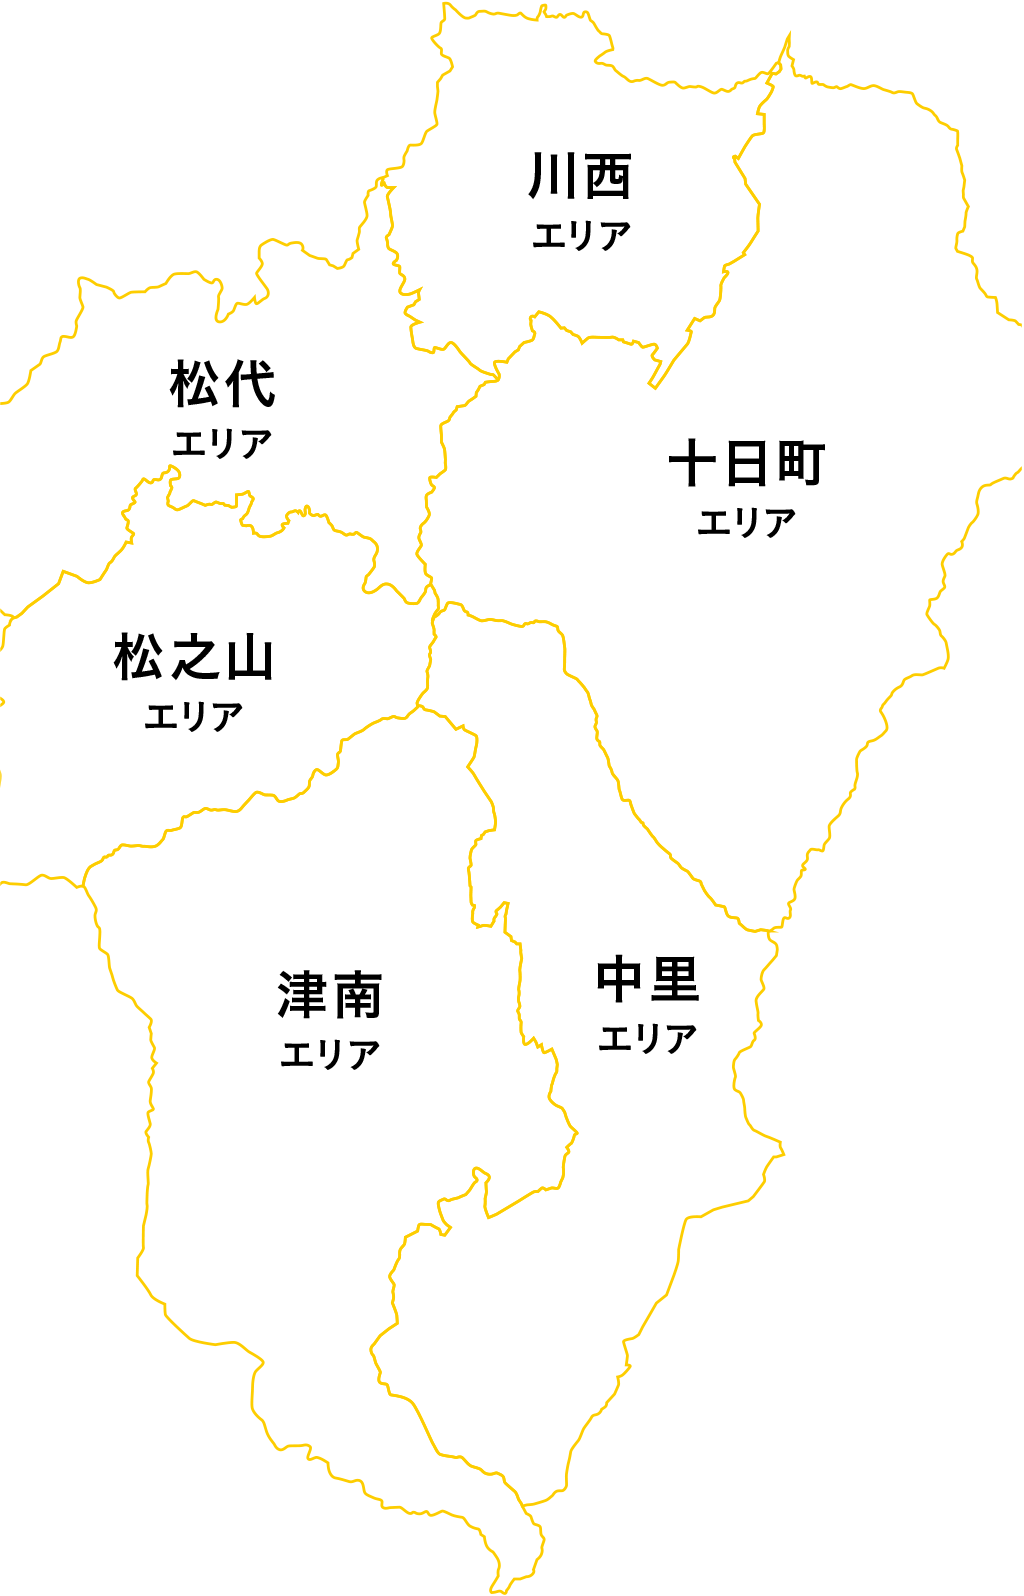 Các khu vực chính của Echigo-Tsumari Art Triennale nhìn từ bản đồ